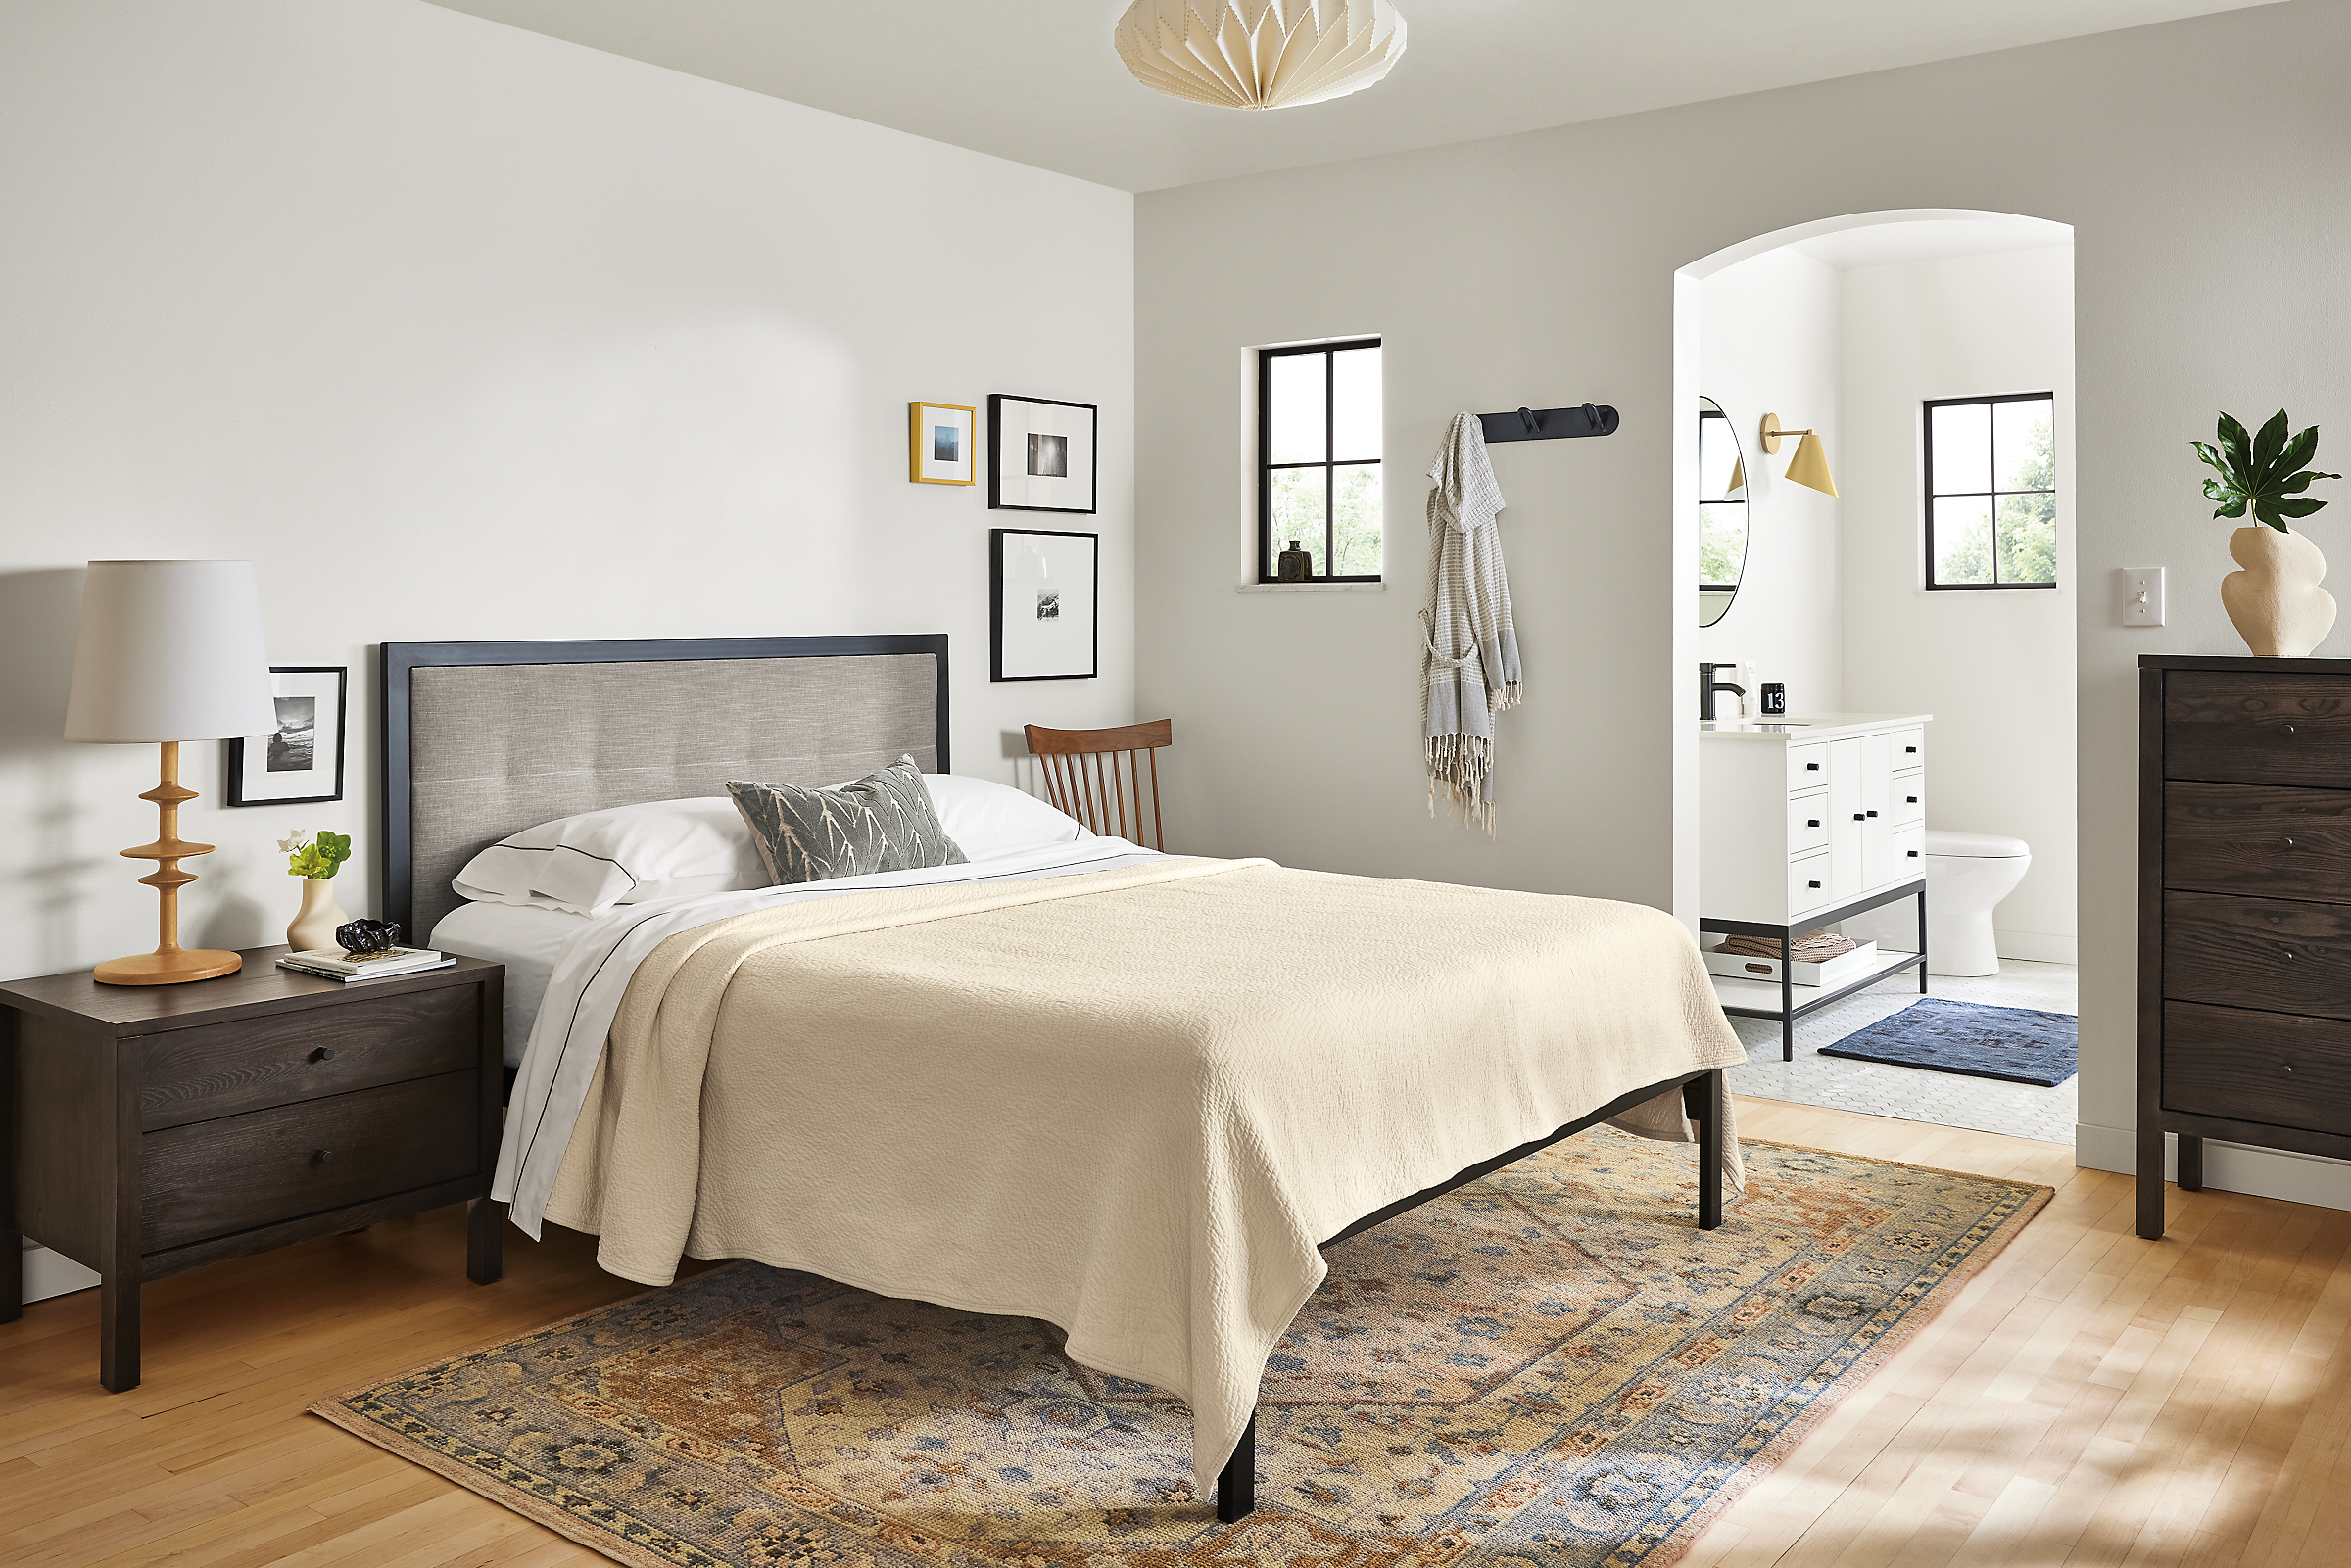 Bedroom with chapman queen bed, emerson nightstand, veda rug; bathroom with linear vanity.